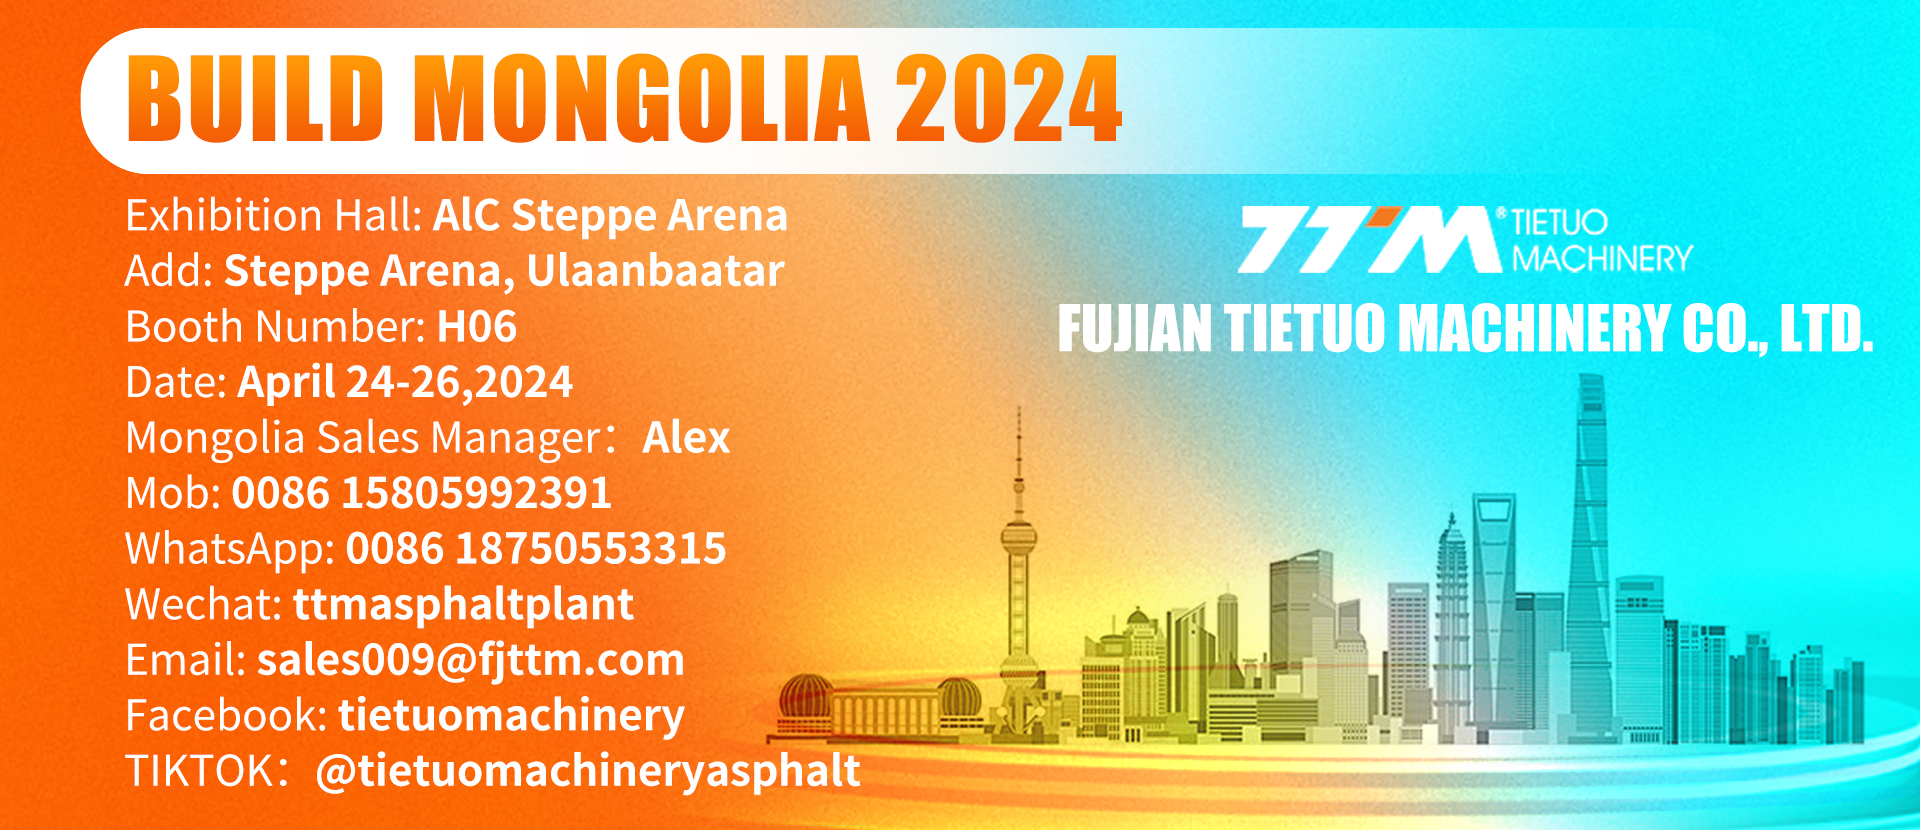 MEMBANGUN MONGOLIA 2024